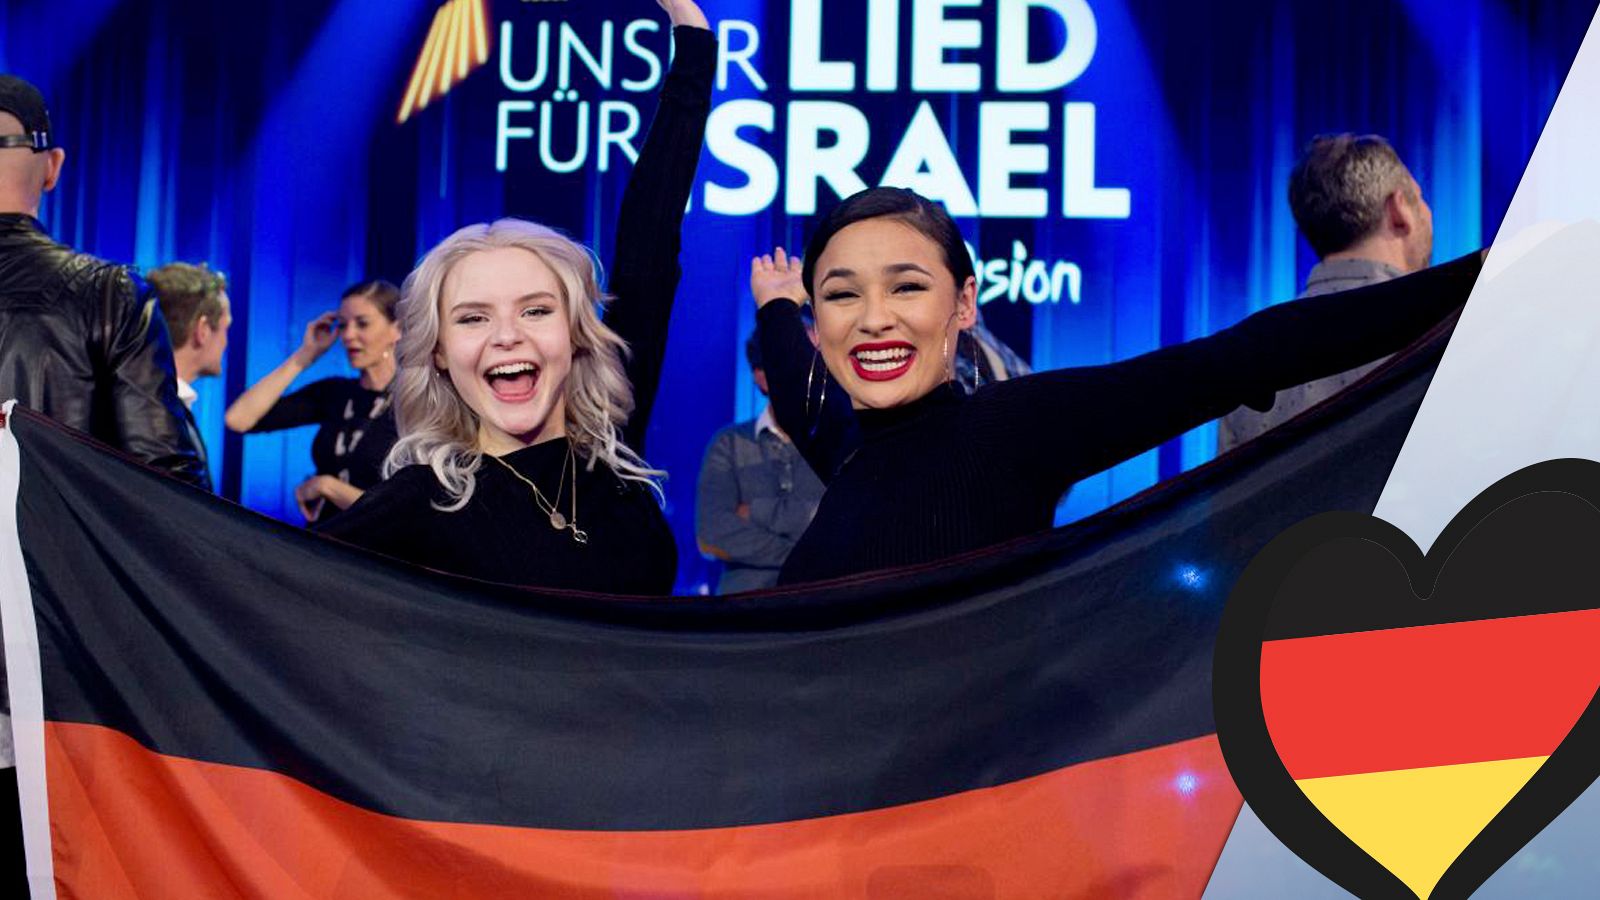 Eurovisión 2019 - S!sters (Alemania): Videoclip de "Sister"